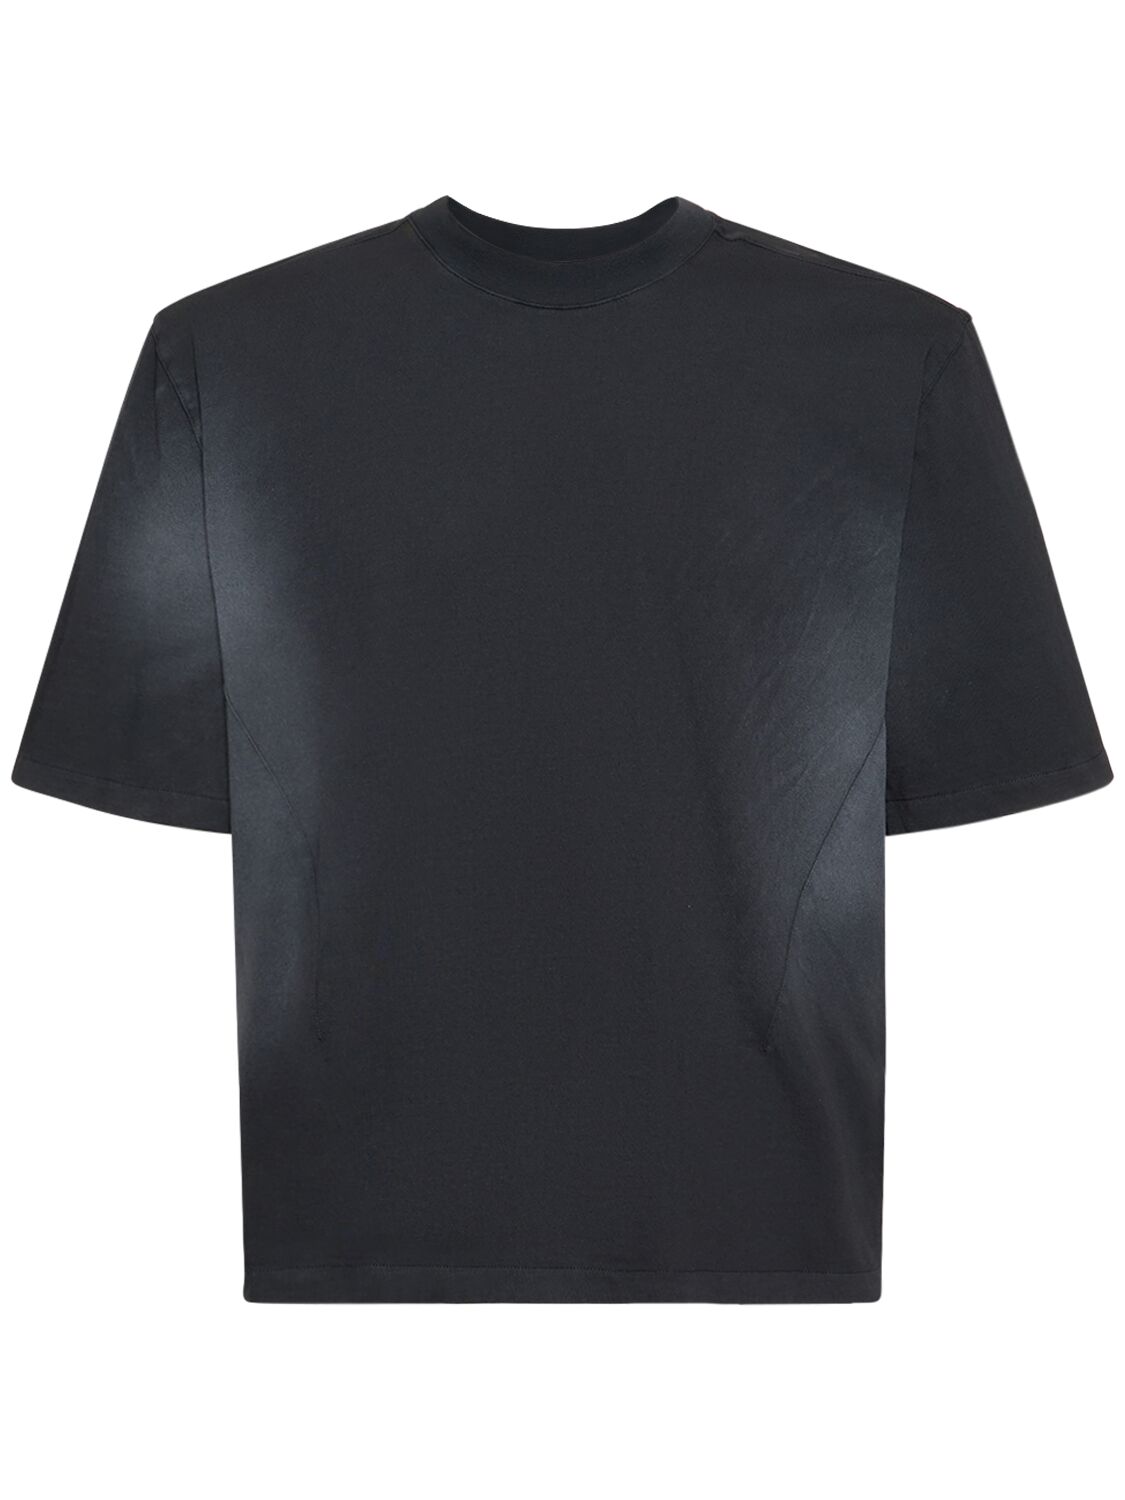 t-shirt noir délavé